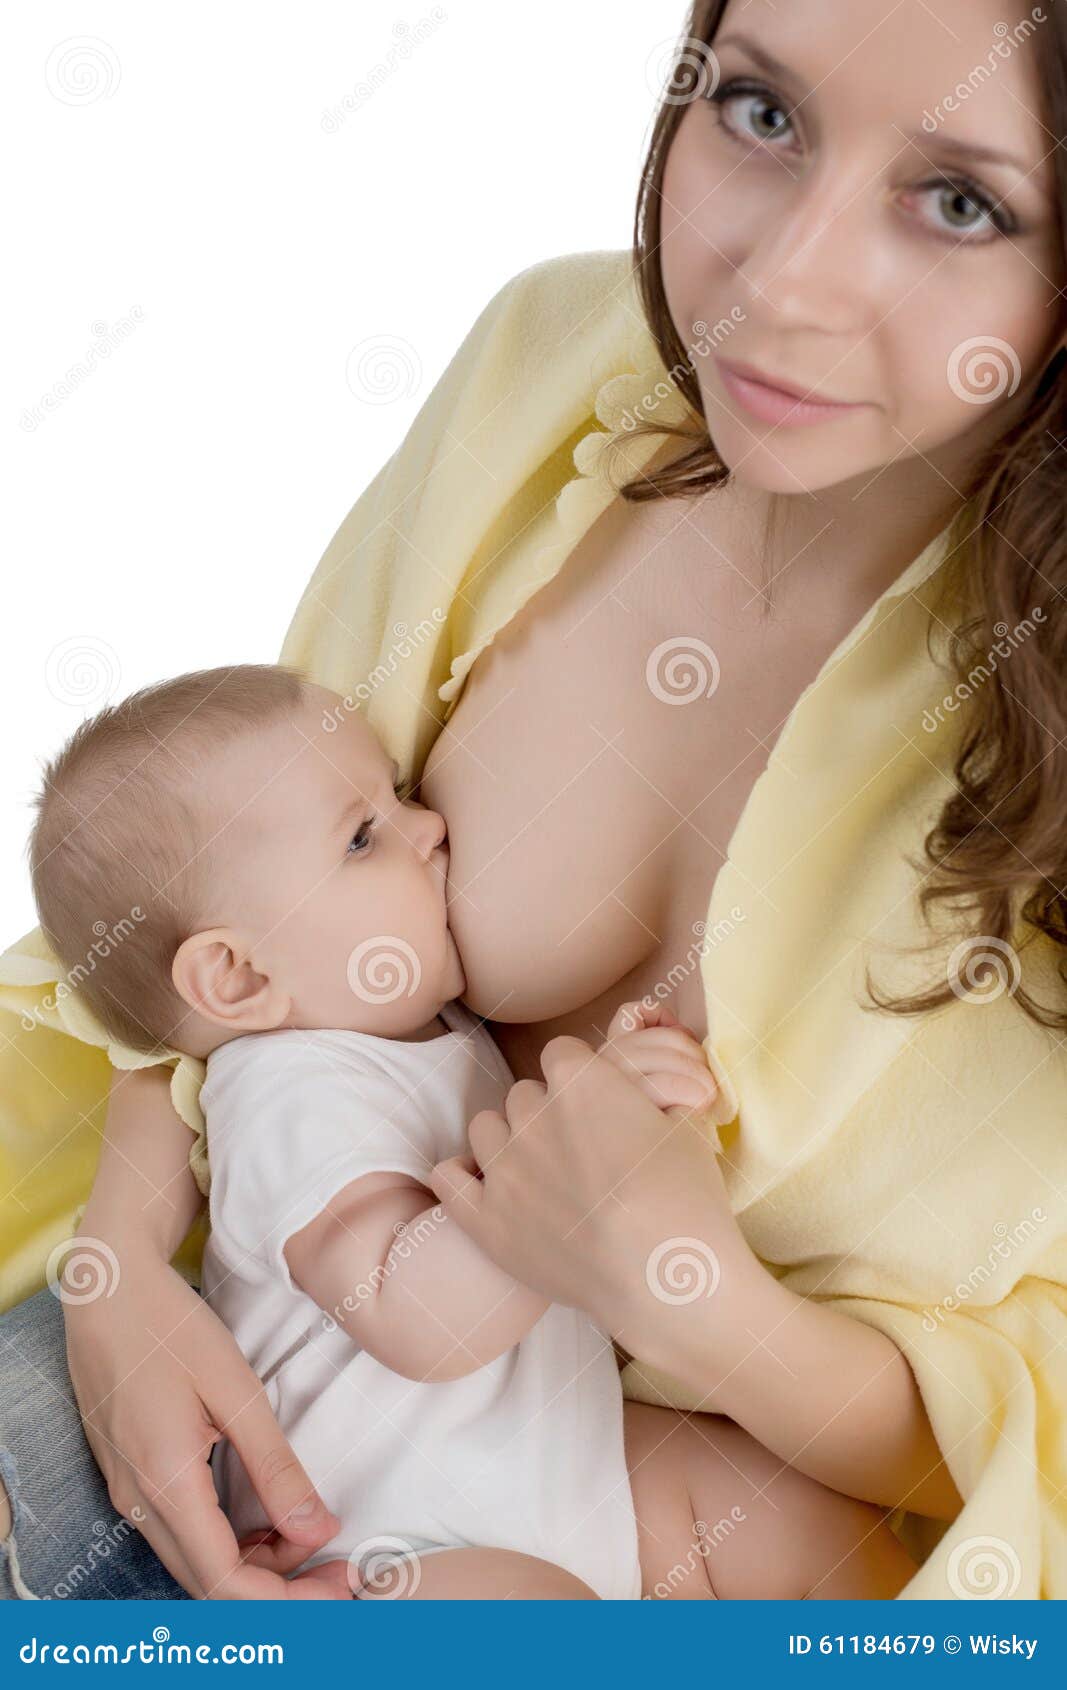 мягкие груди мамы фото 19